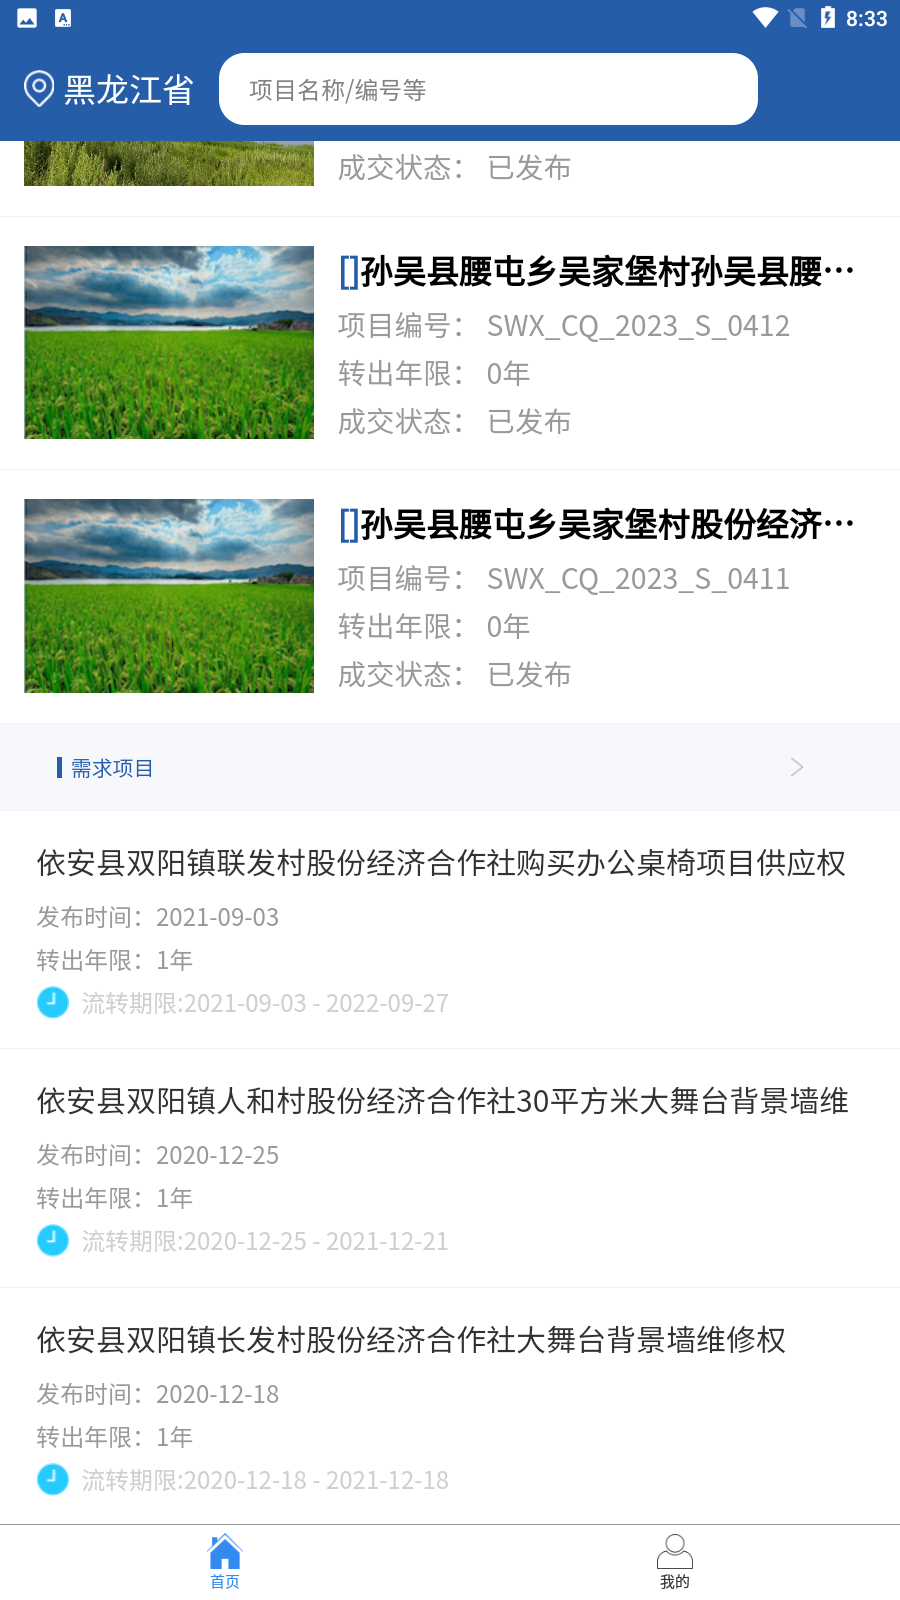 龙江农交app下载-龙江农交v1.0.6 官方版